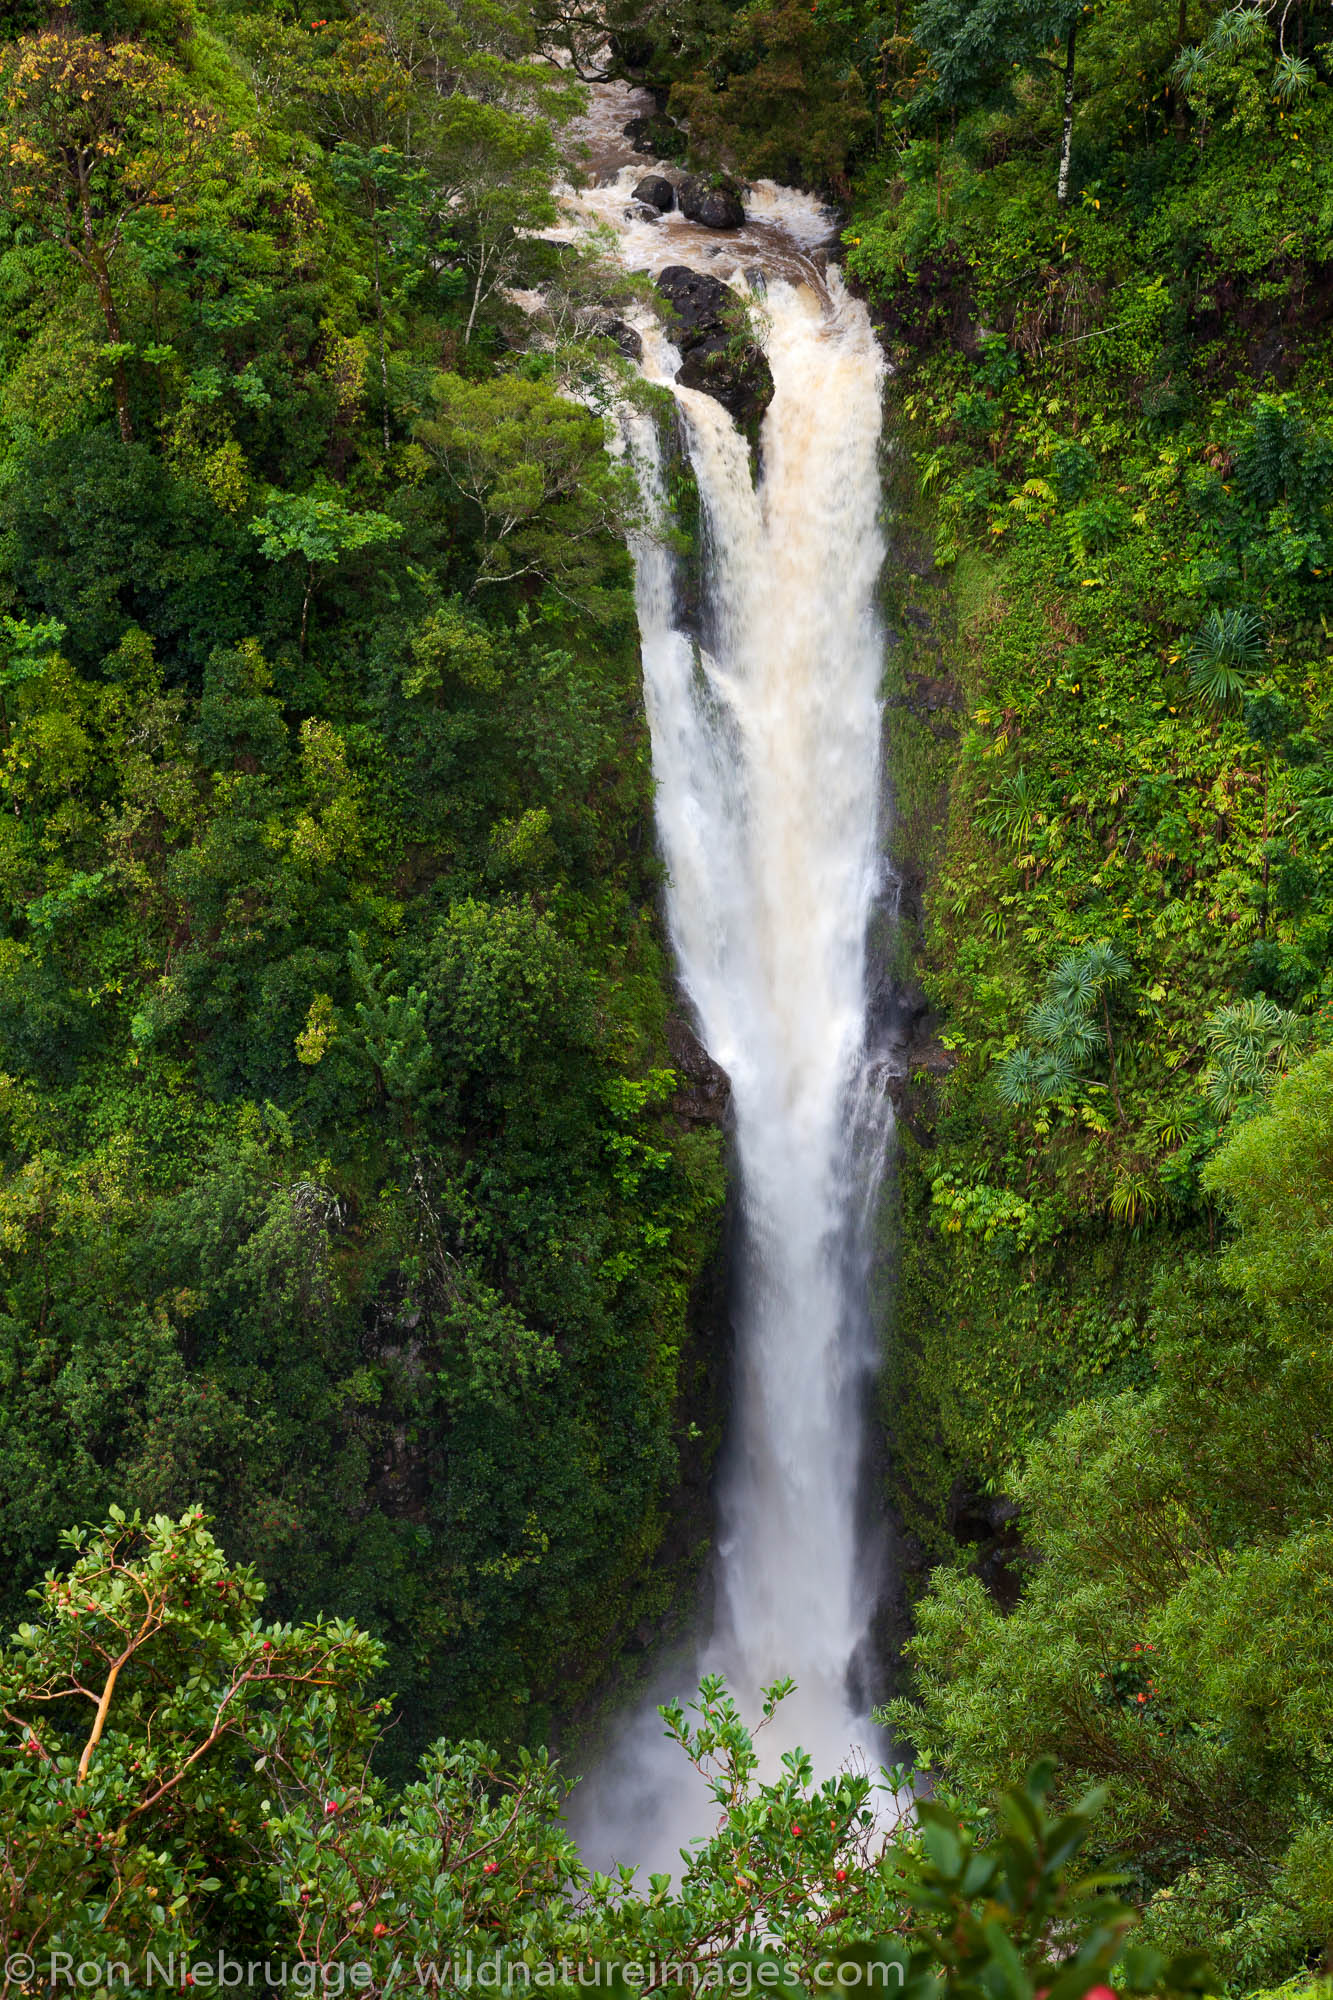 Lower Puohokamoa Falls on the Hana Highway, near Hana, Maui, Hawaii.